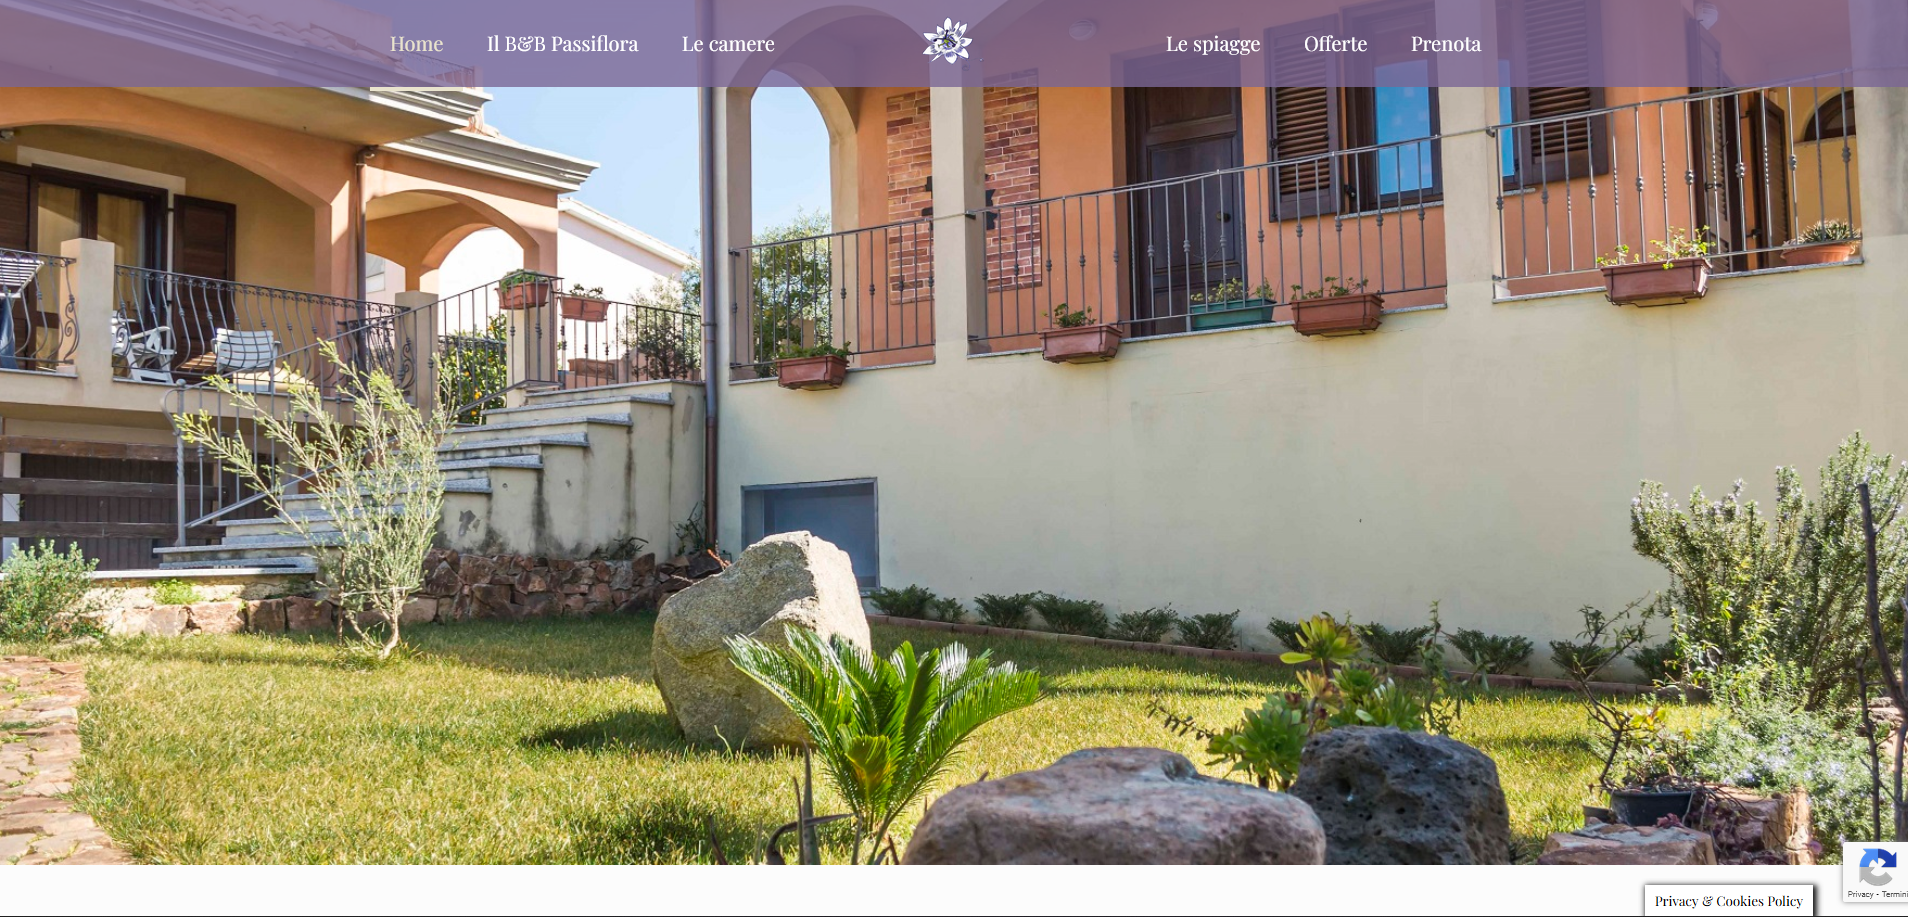 immagine home page passiflora ogliastra